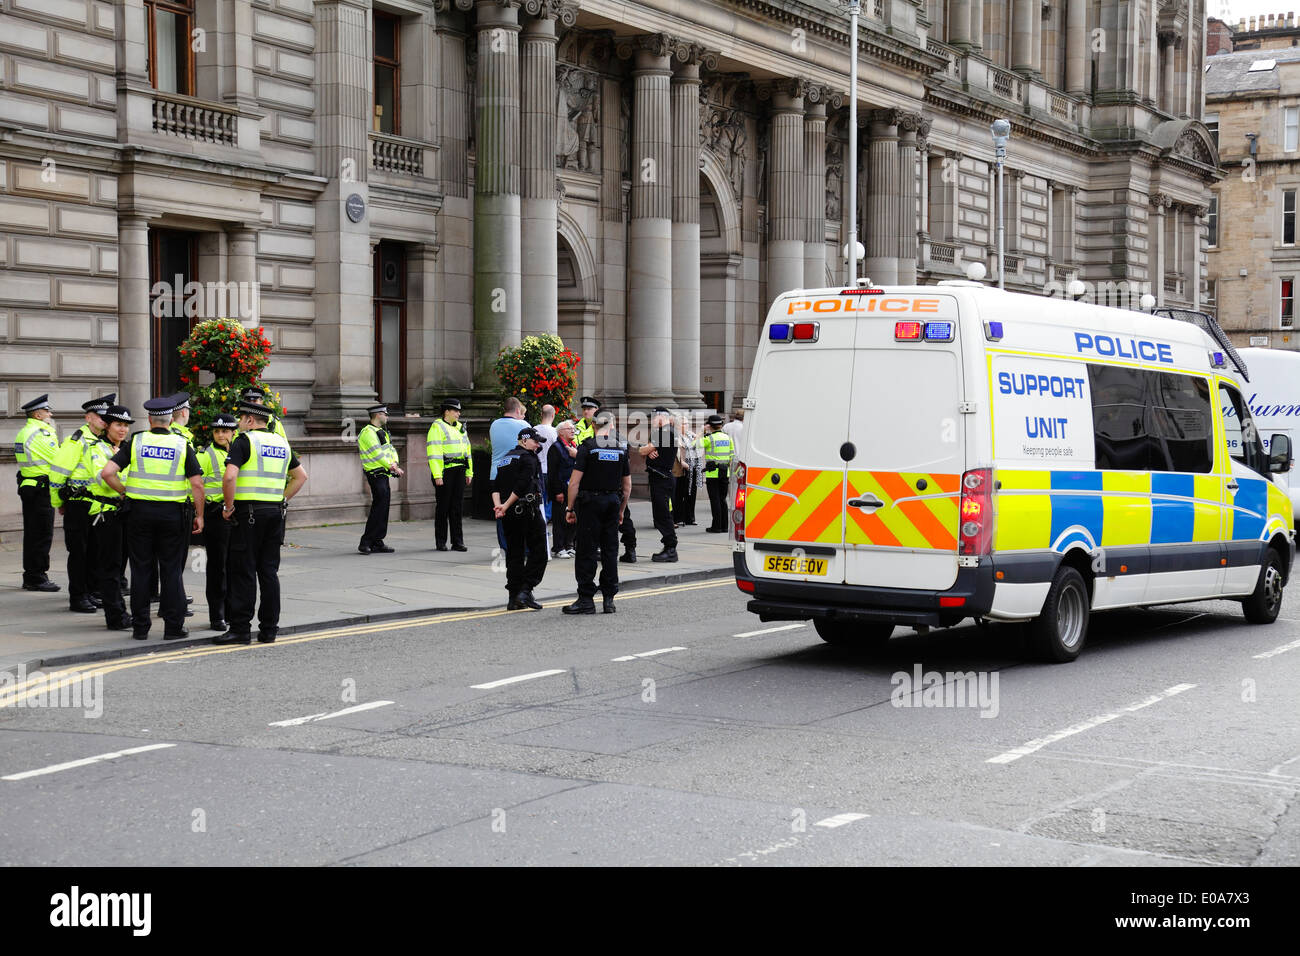 Des policiers et une fourgonnette de l'unité de soutien assistent à un incident sur George Square, dans le centre-ville de Glasgow, en Écosse, au Royaume-Uni Banque D'Images